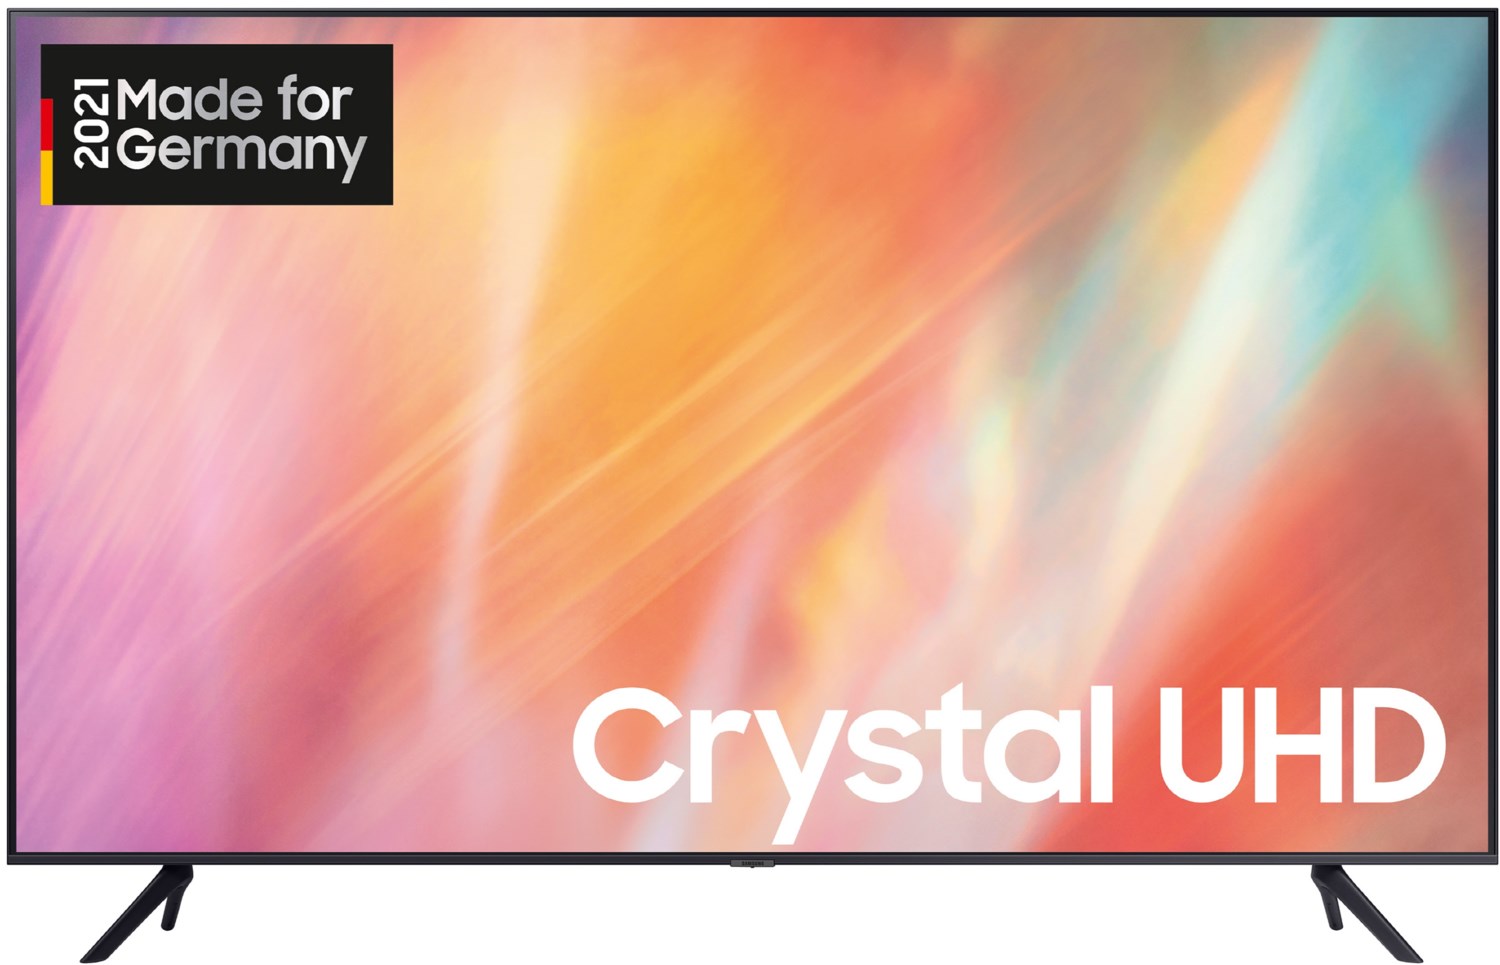 Samsung GU43AU7179U LCD-TV 43 Zoll Crystal UHD 4K, titan grau